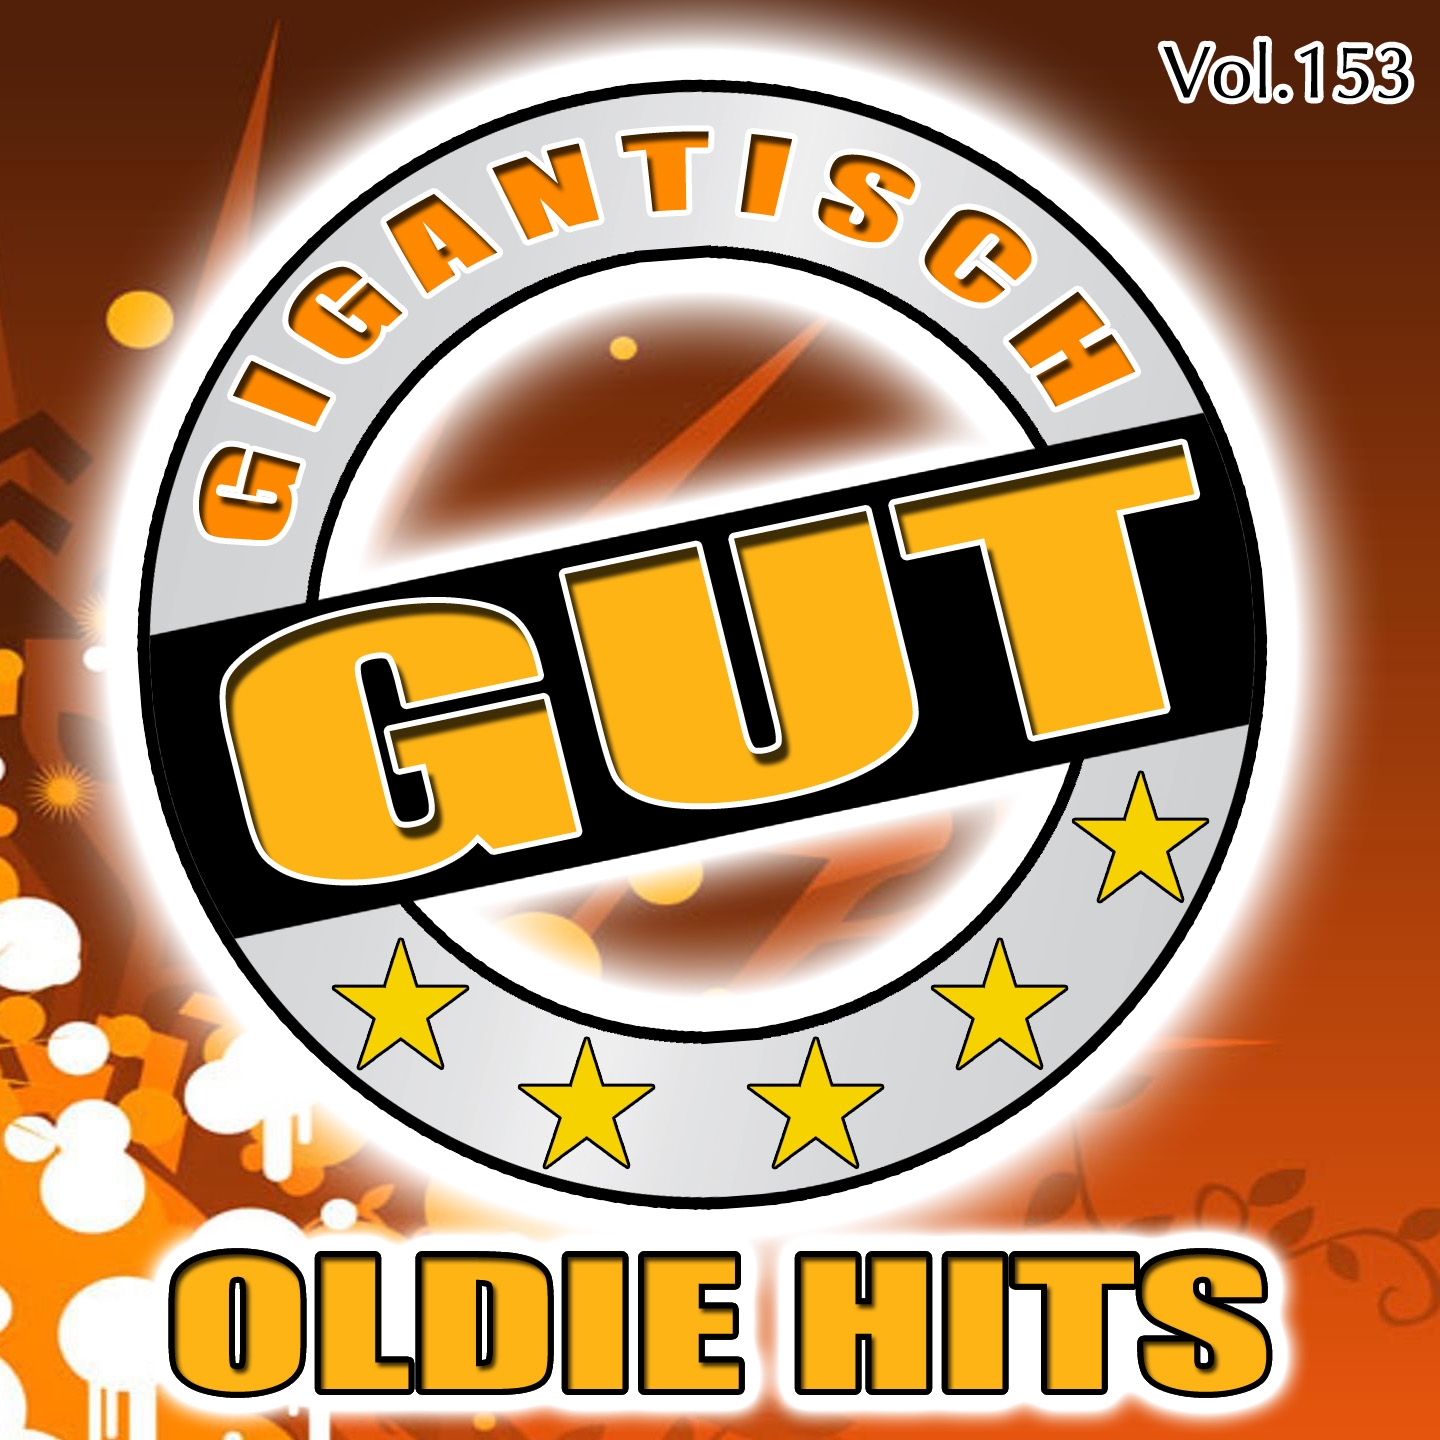 Gigantisch Gut: Oldie Hits, Vol. 153